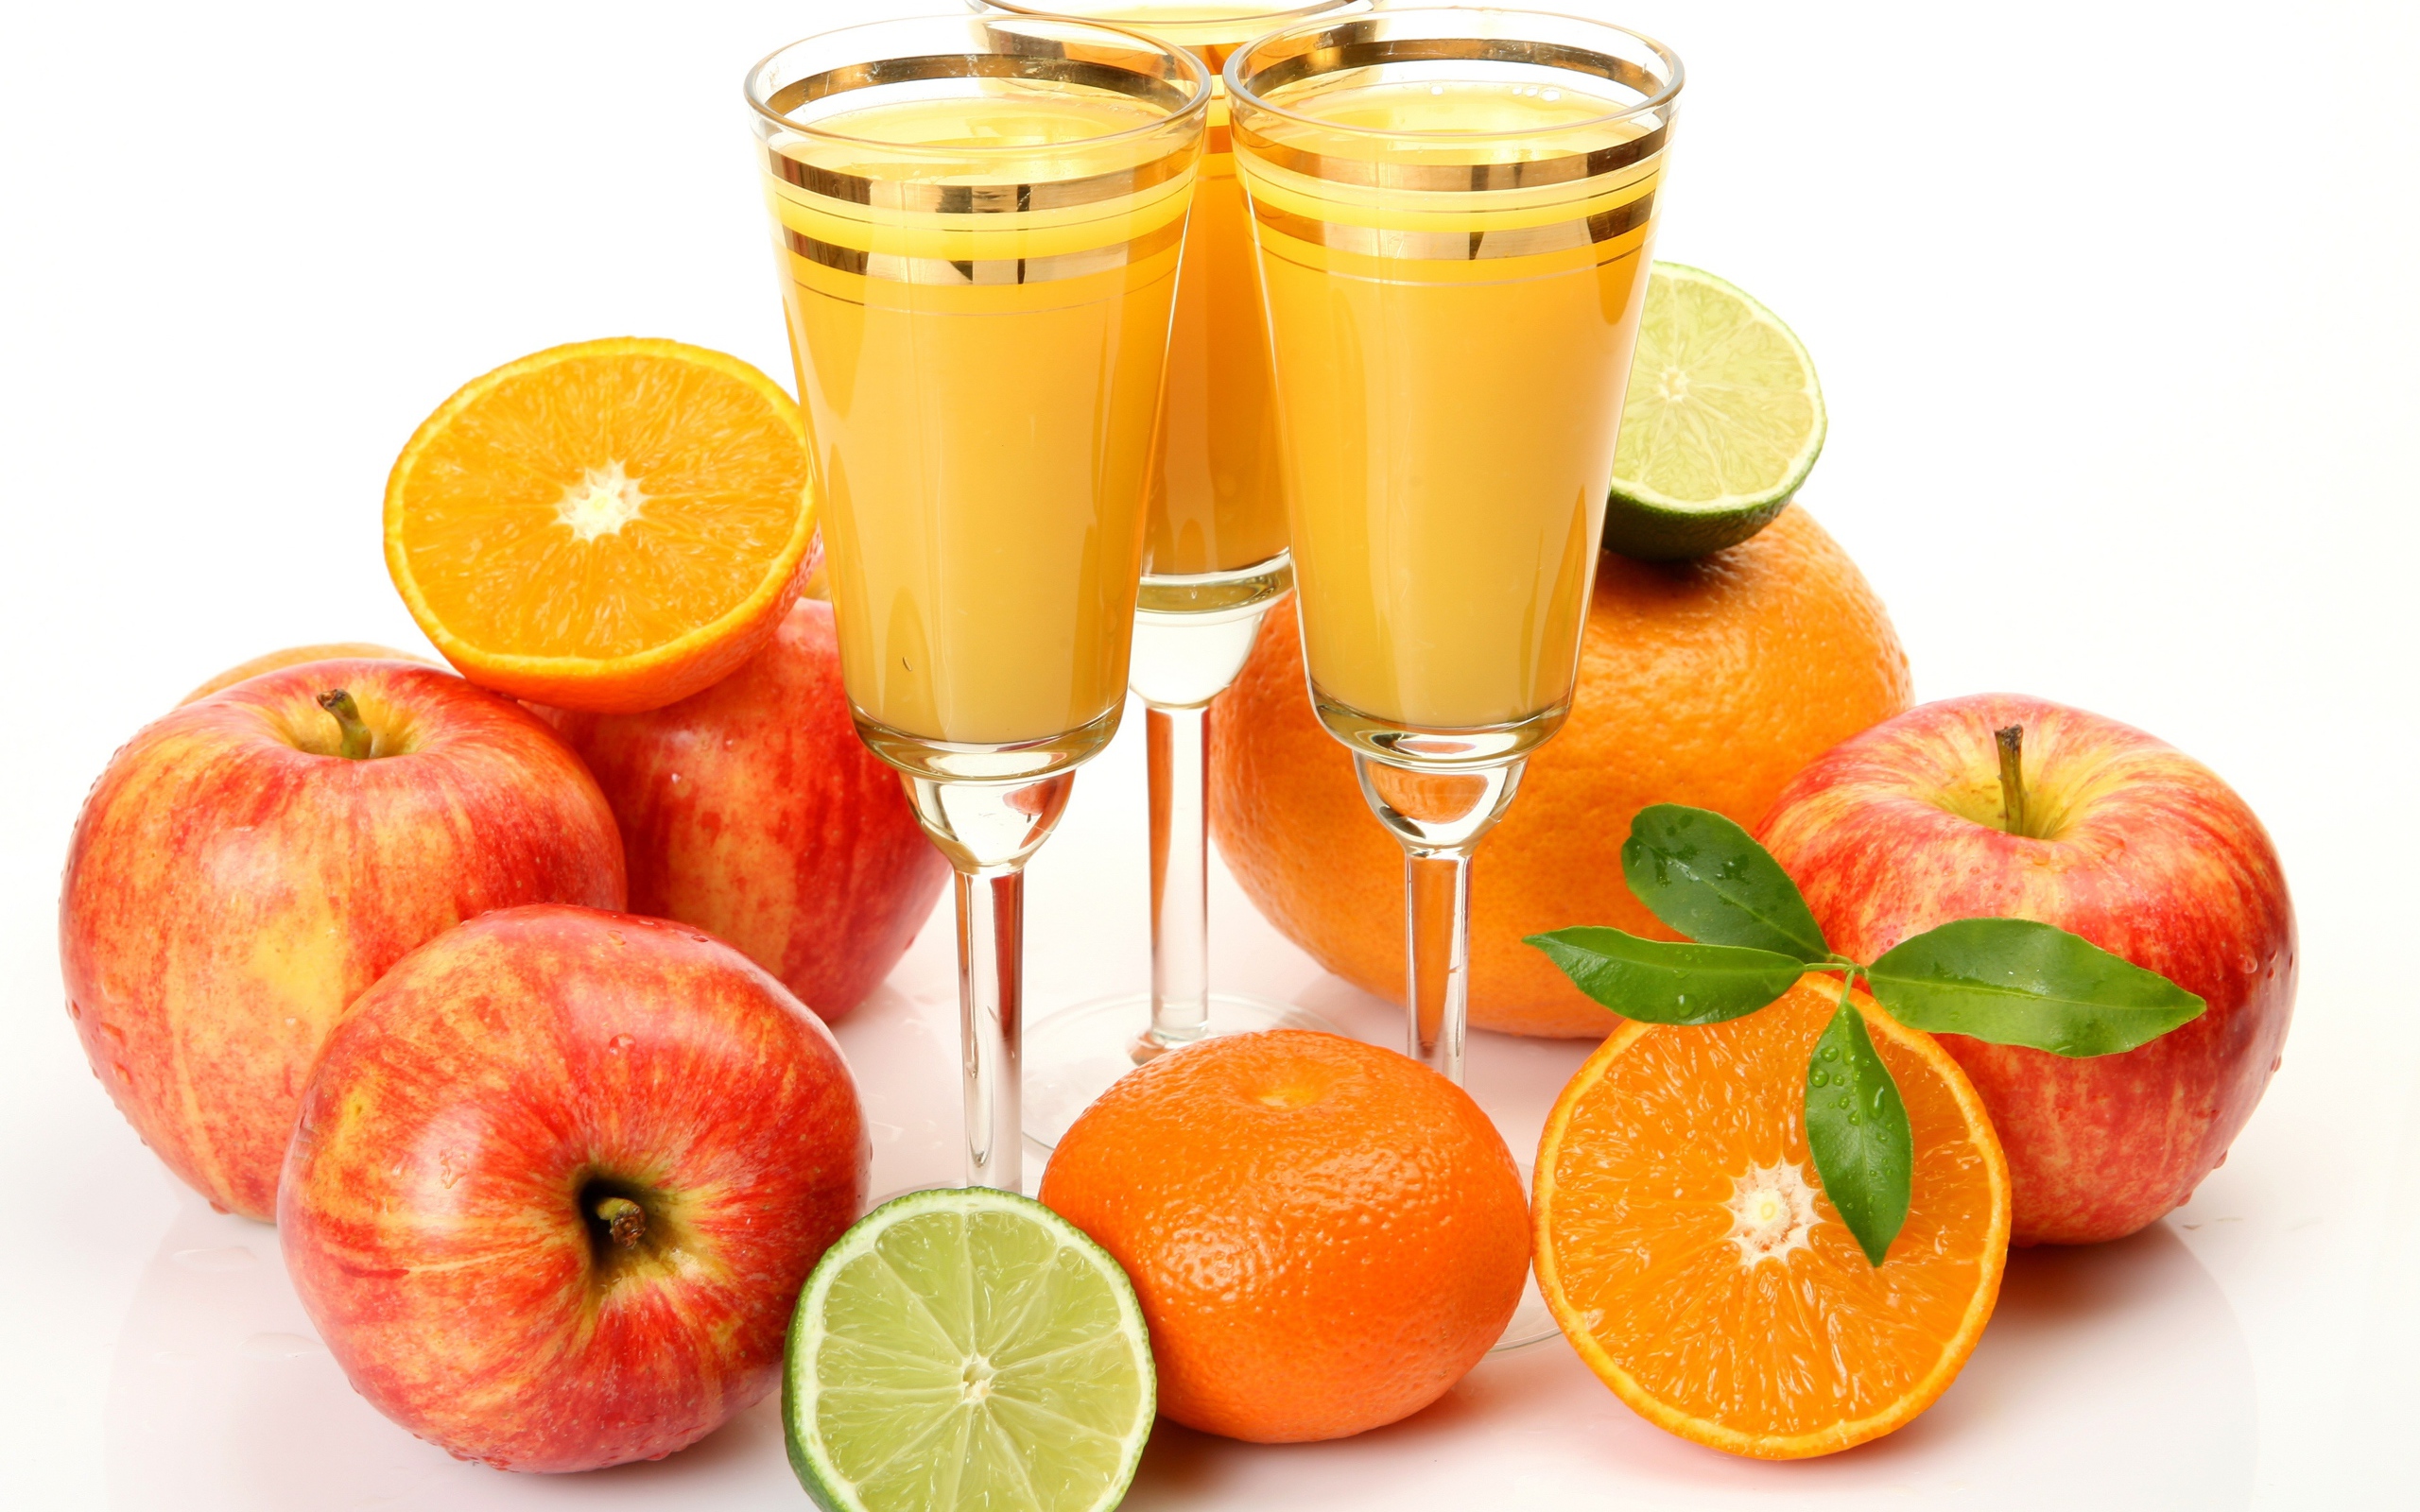 Три бокала сока на столе с яблоками и апельсинами на белом фоне